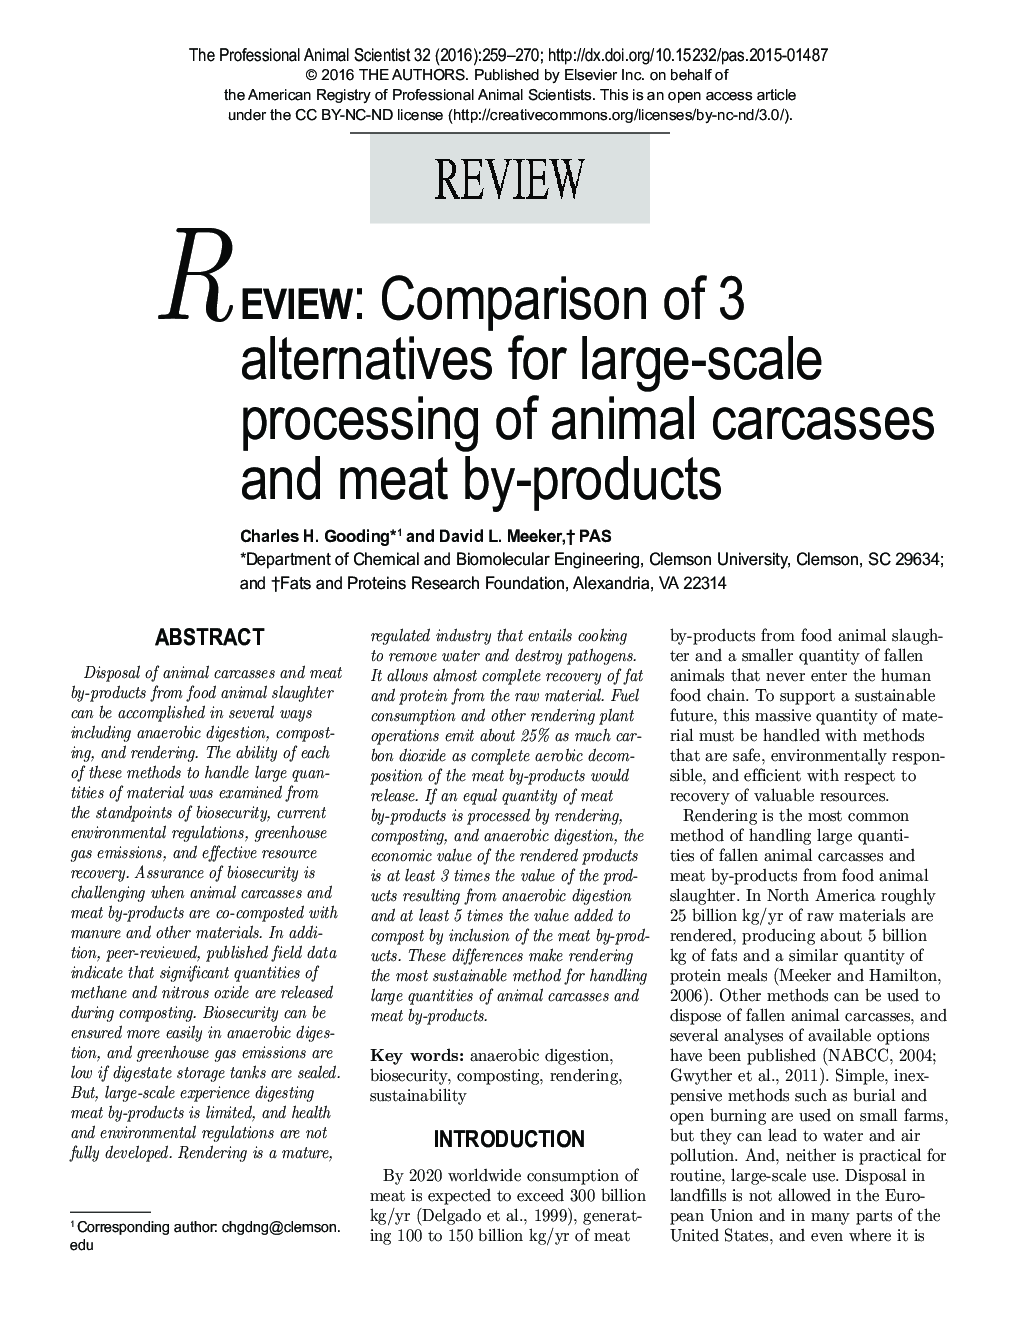 بررسی: مقایسه 3 گزینه برای پردازش در مقیاس بزرگ لاشه حیوانات و گوشت فرآورده های گوشتی 